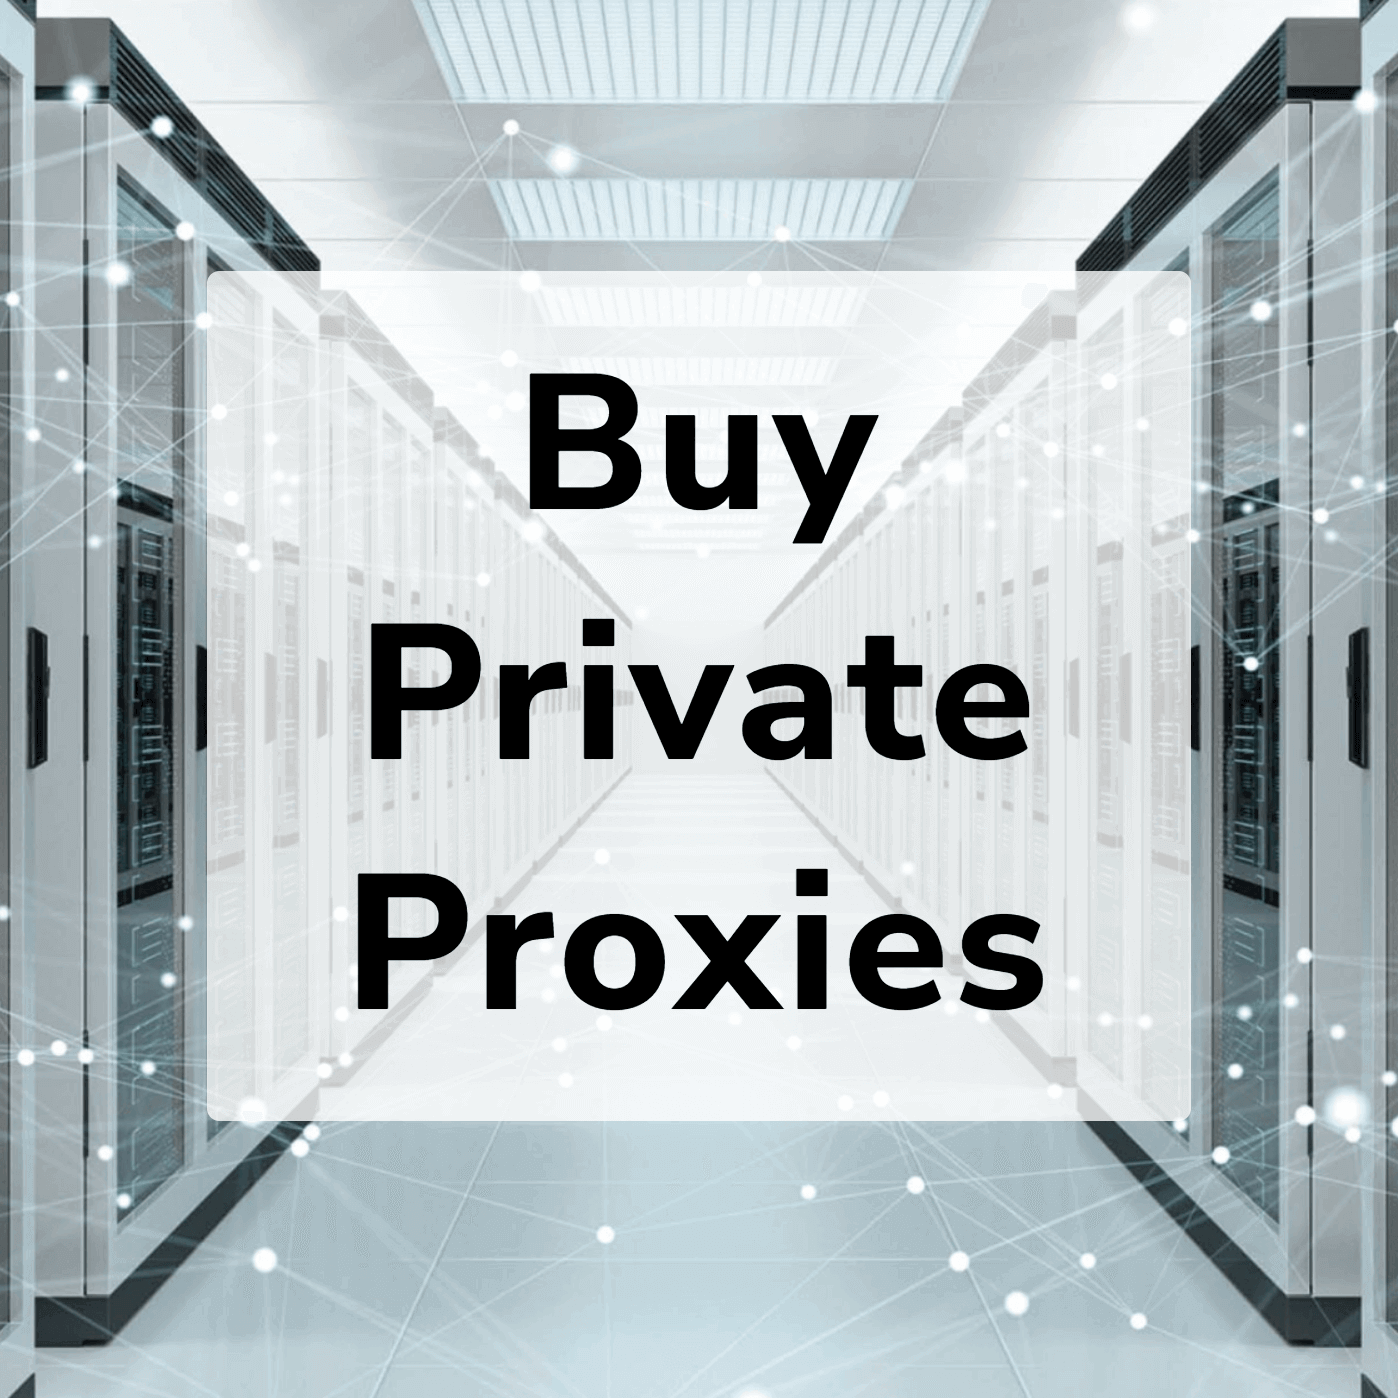 Proxies static. Proxy sale.